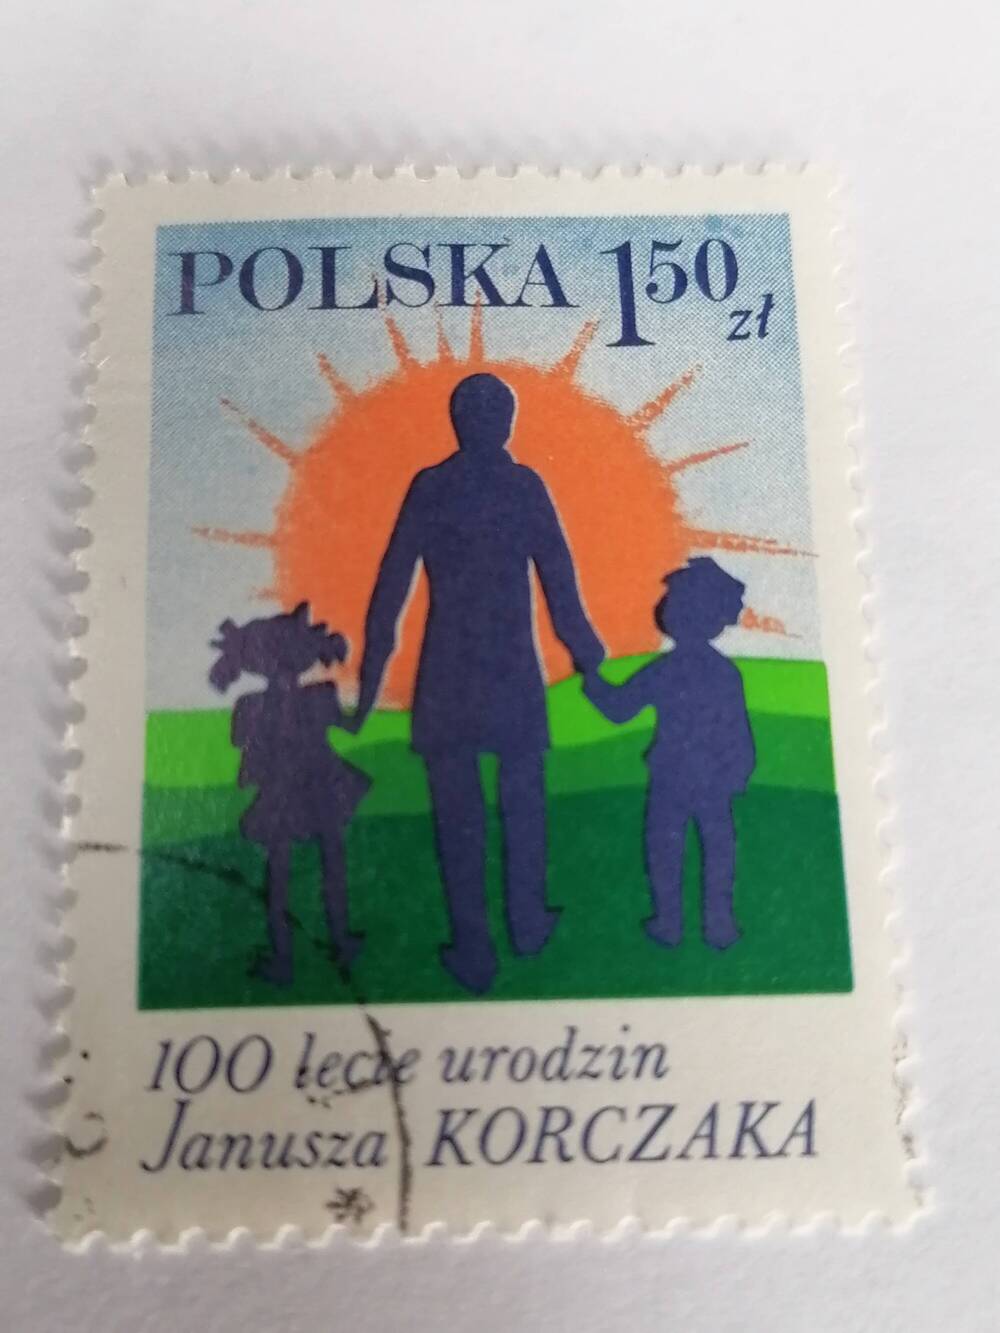 Марка почтовая гашеная, Polska,Польша,1978 г, 100 lecie urodzin Janusza Korczaka